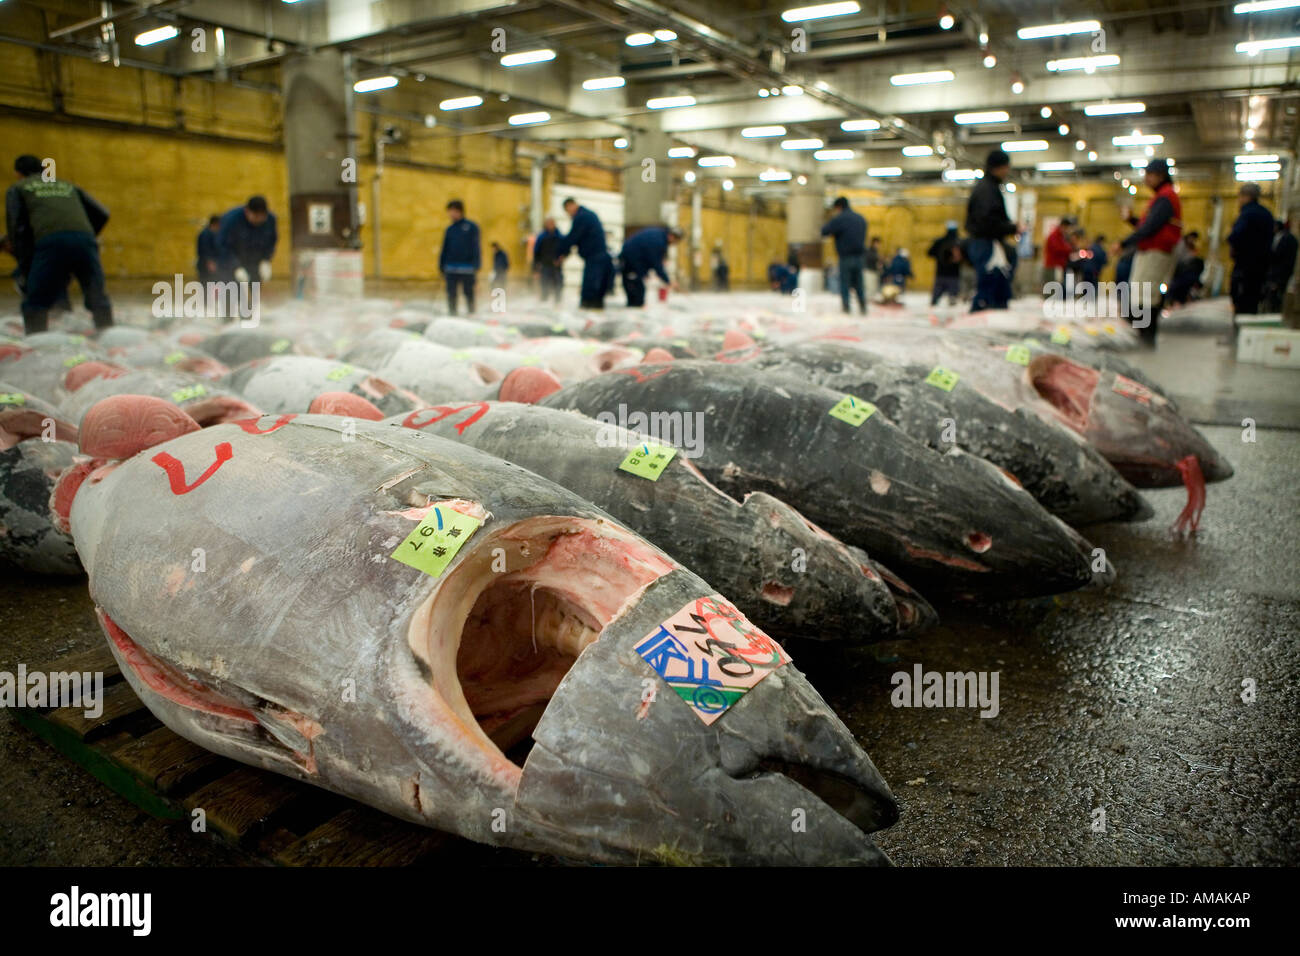 Graded tuna at a market Stock Photo